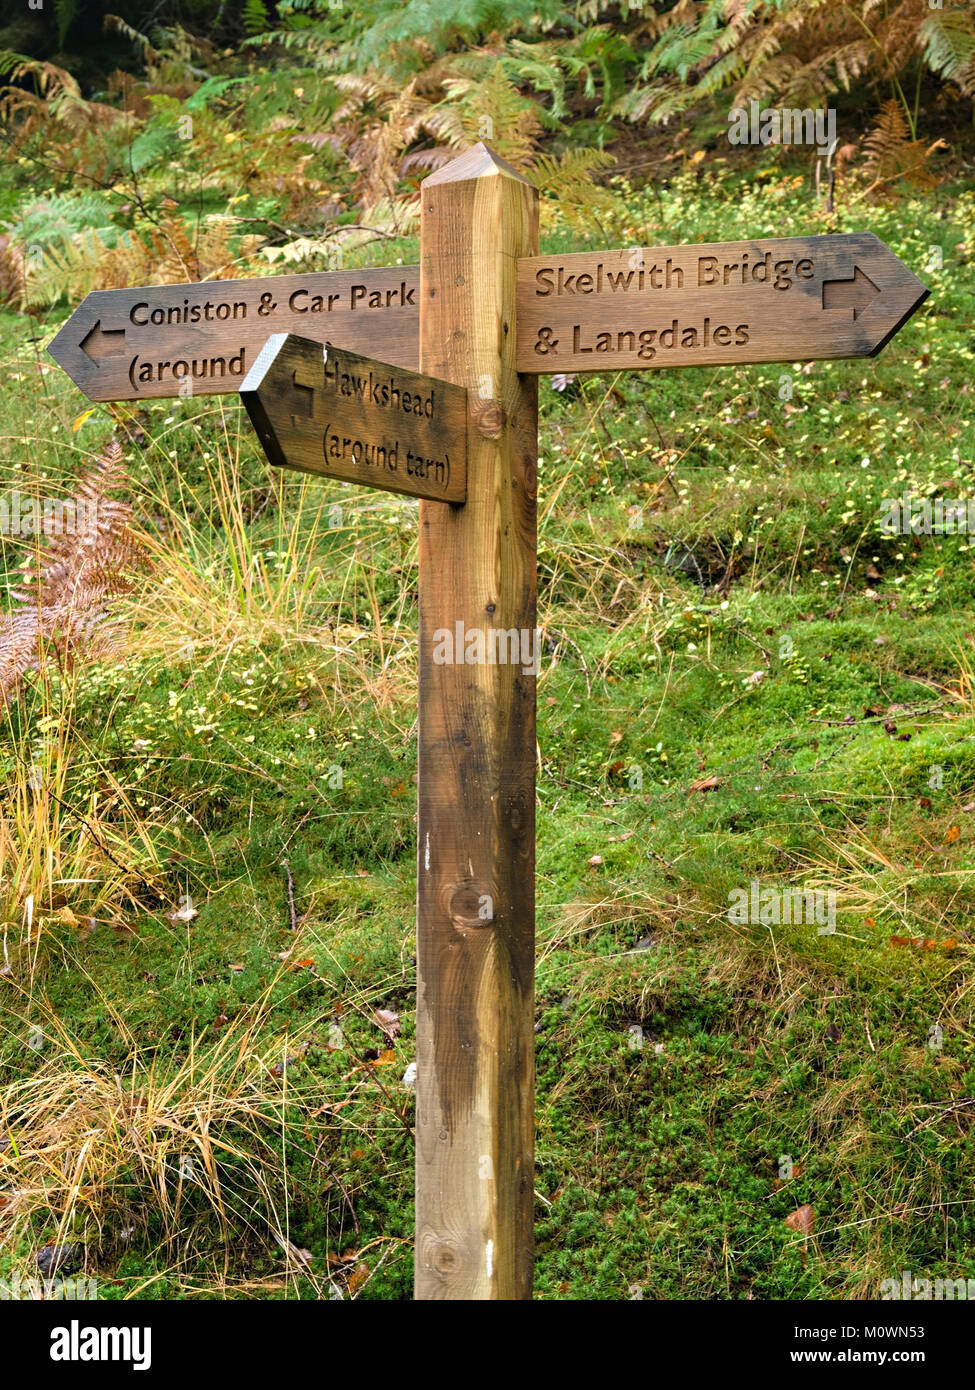 Dito di legno sentiero post segno indicante le direzioni per Skelwith Bridge, Langdales, Hawkshead e Coniston, Lake District inglese, Cumbria, England, Regno Unito Foto Stock